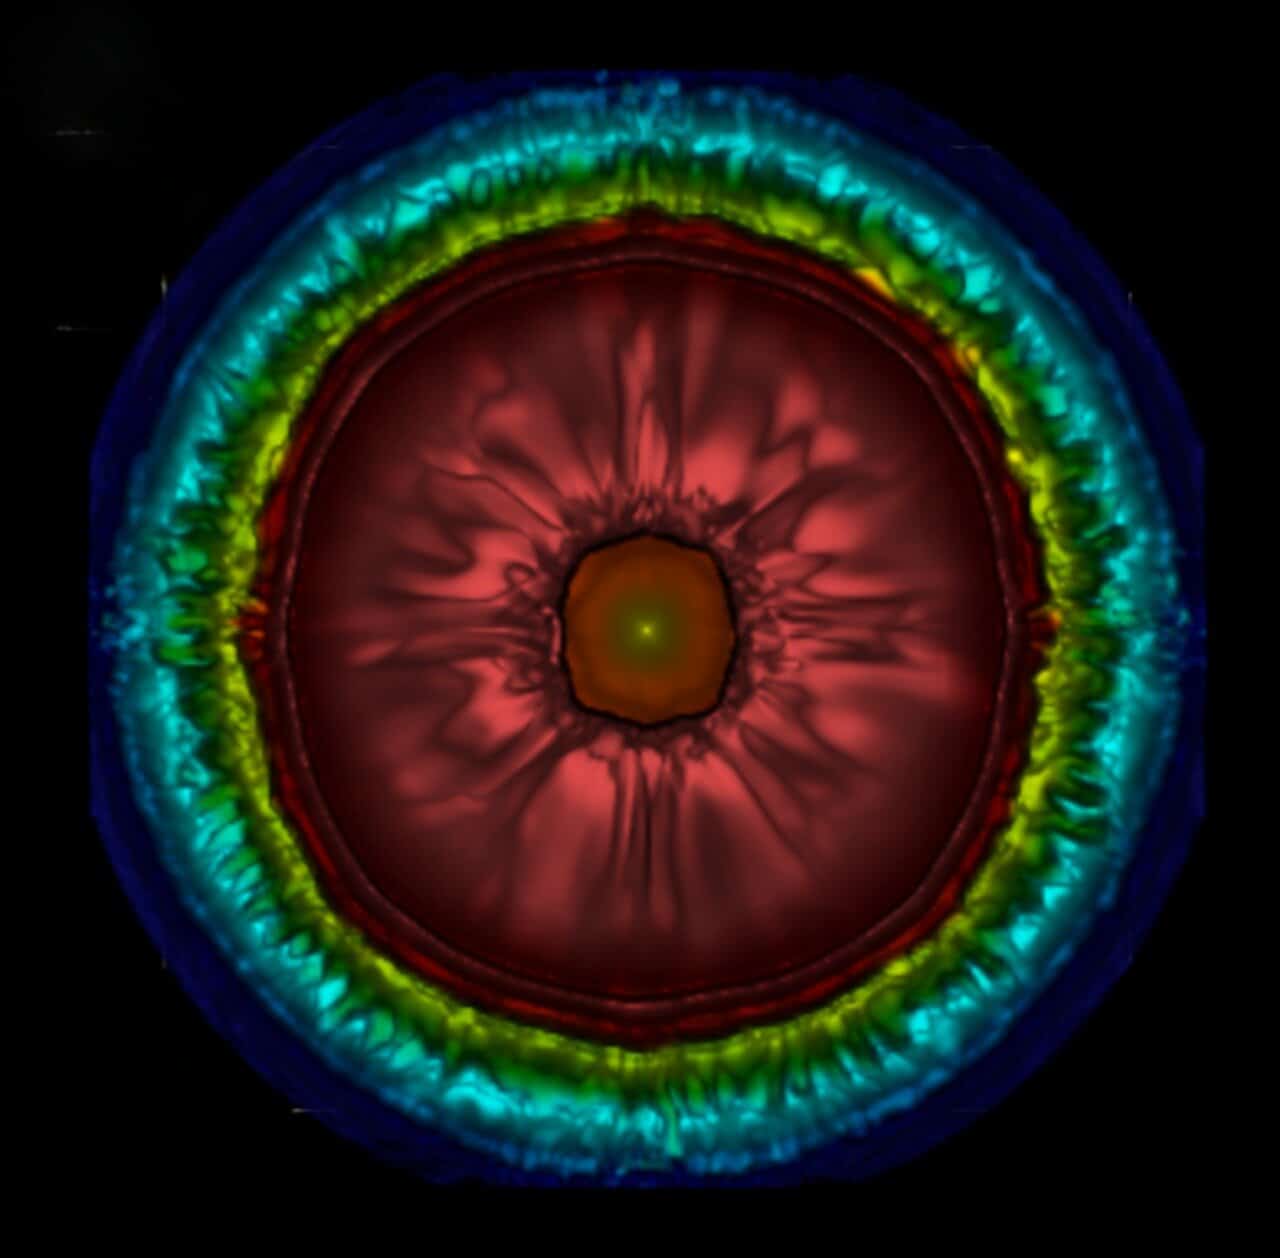 世界初となる超新星の3Dシミュレーション画像は500万時間かけて作成された